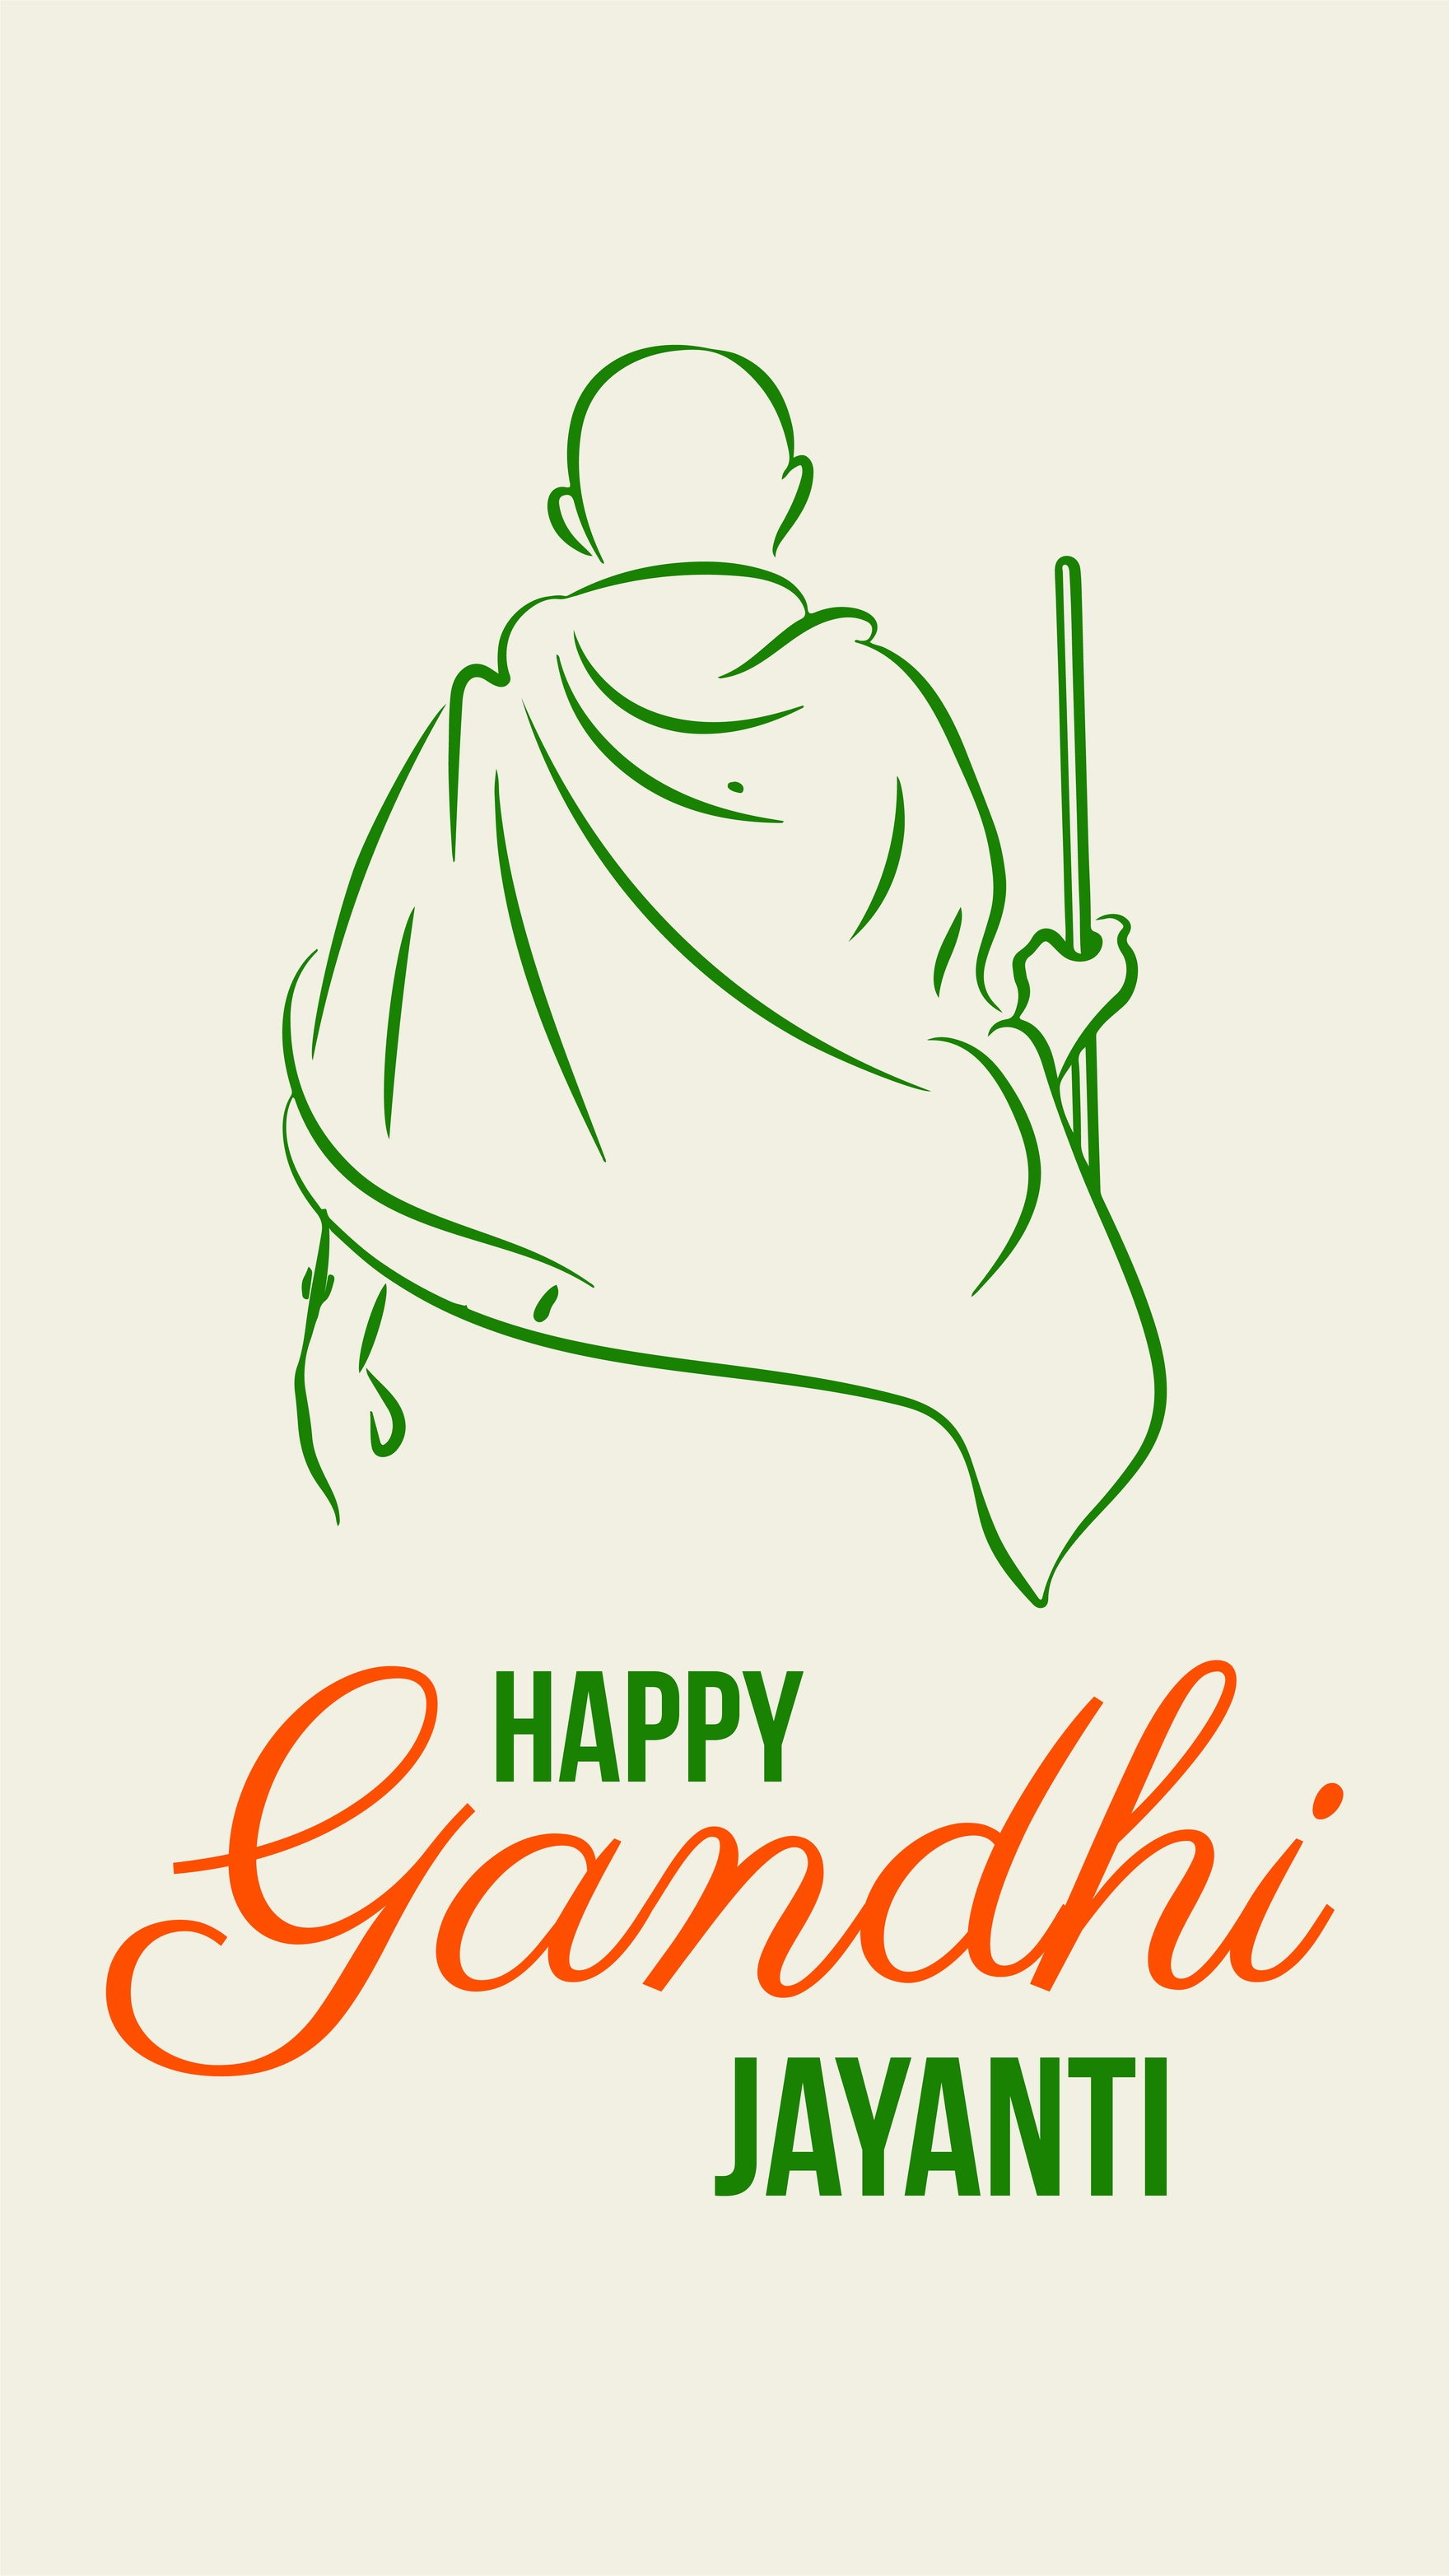 Free Gandhi Jayanti iPhone Background